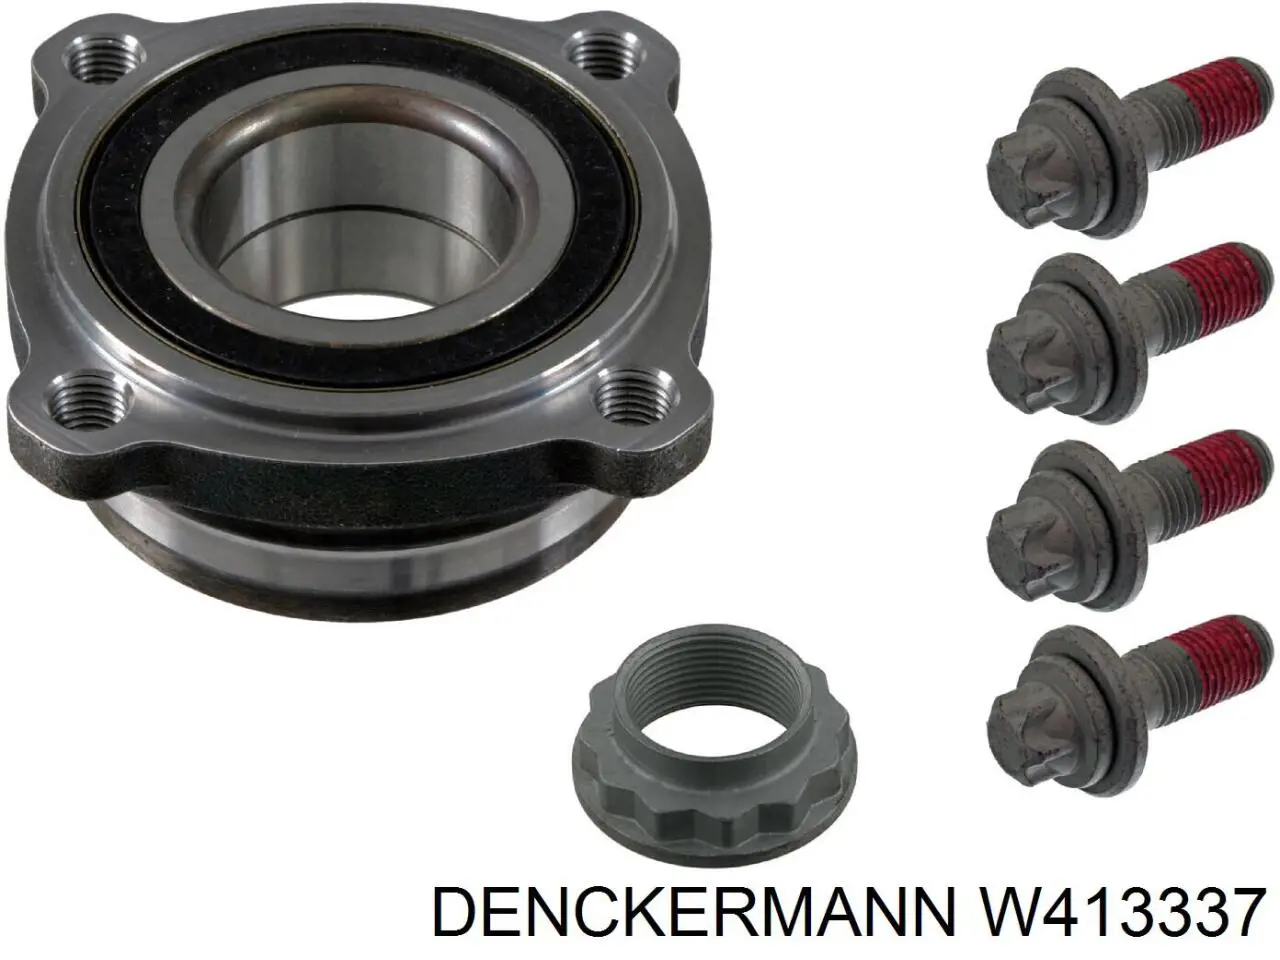 W413337 Denckermann rolamento de cubo traseiro